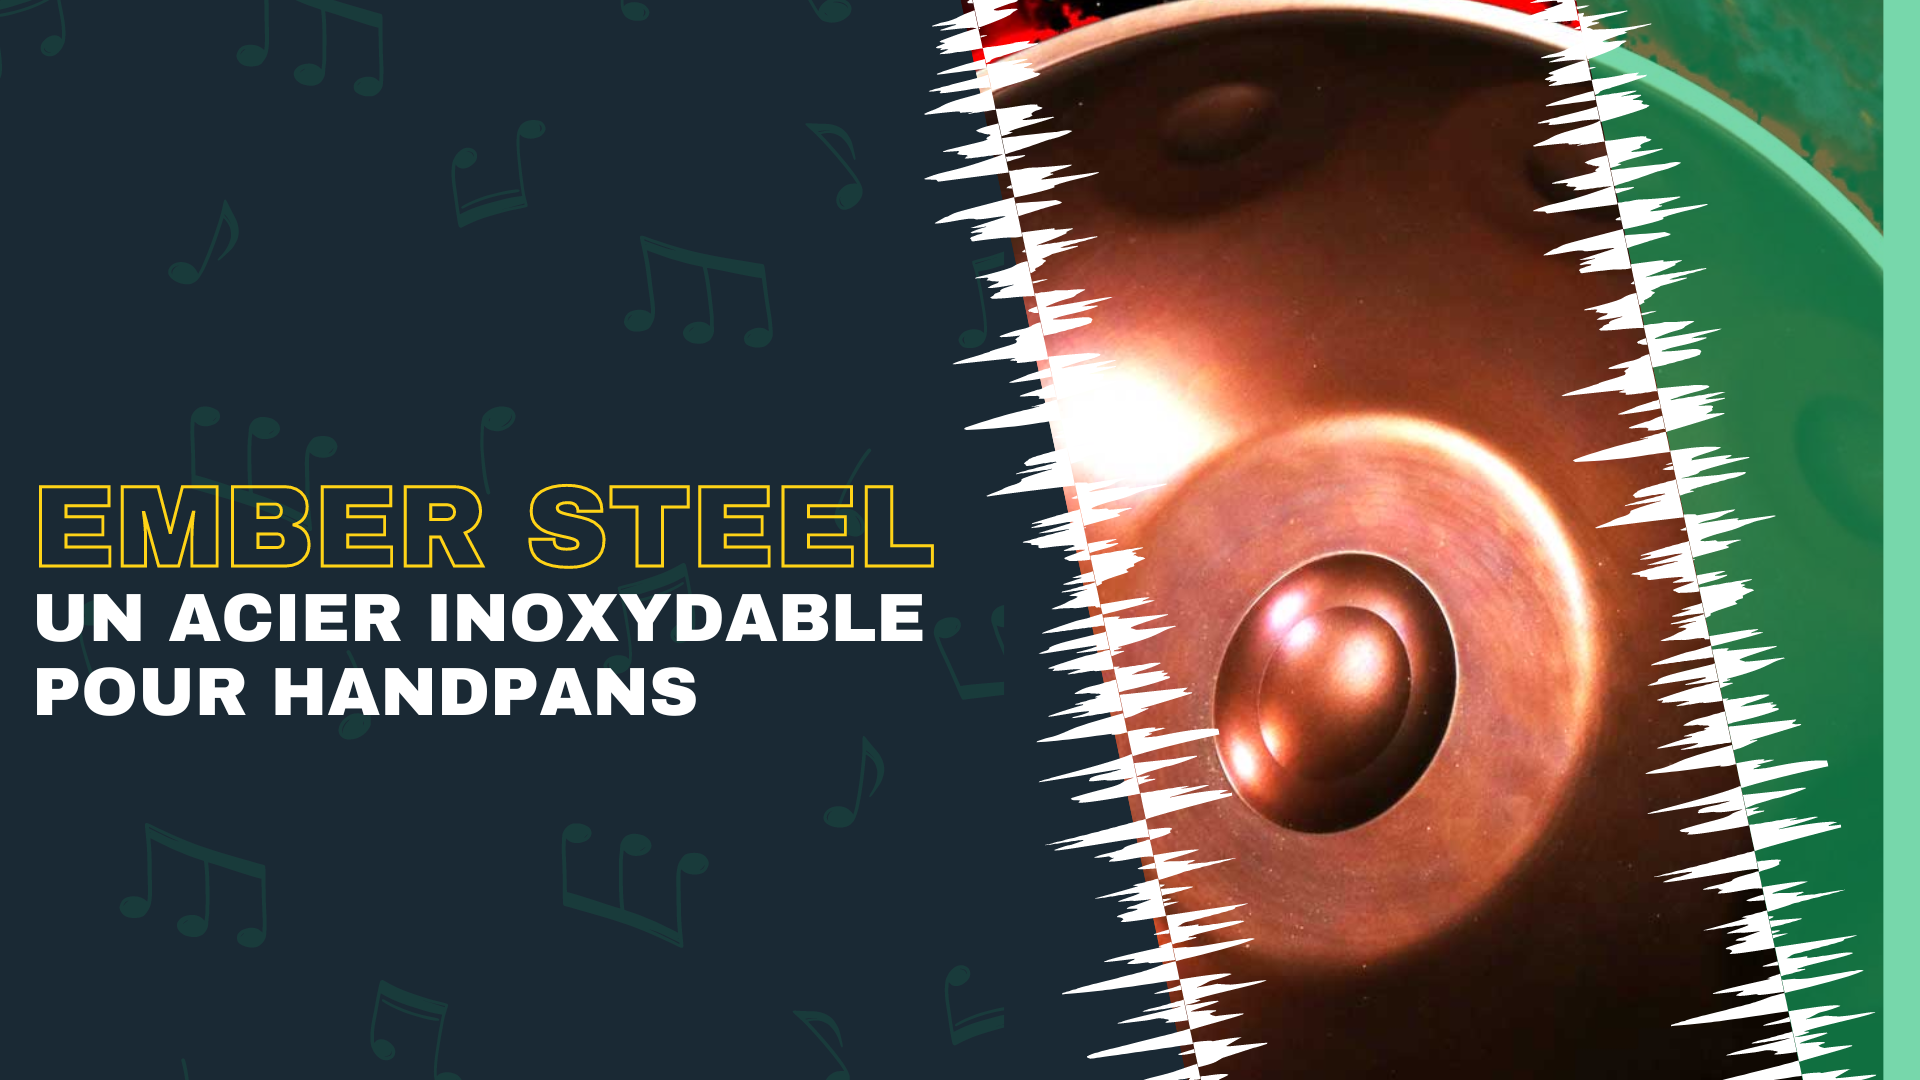 Méta description pour "Ember Steel : Un acier inoxydable pour handpans aux propriétés particulières ?" (159 caractères): Découvrez Ember Steel, un acier inoxydable unique pour la fabrication de handpans